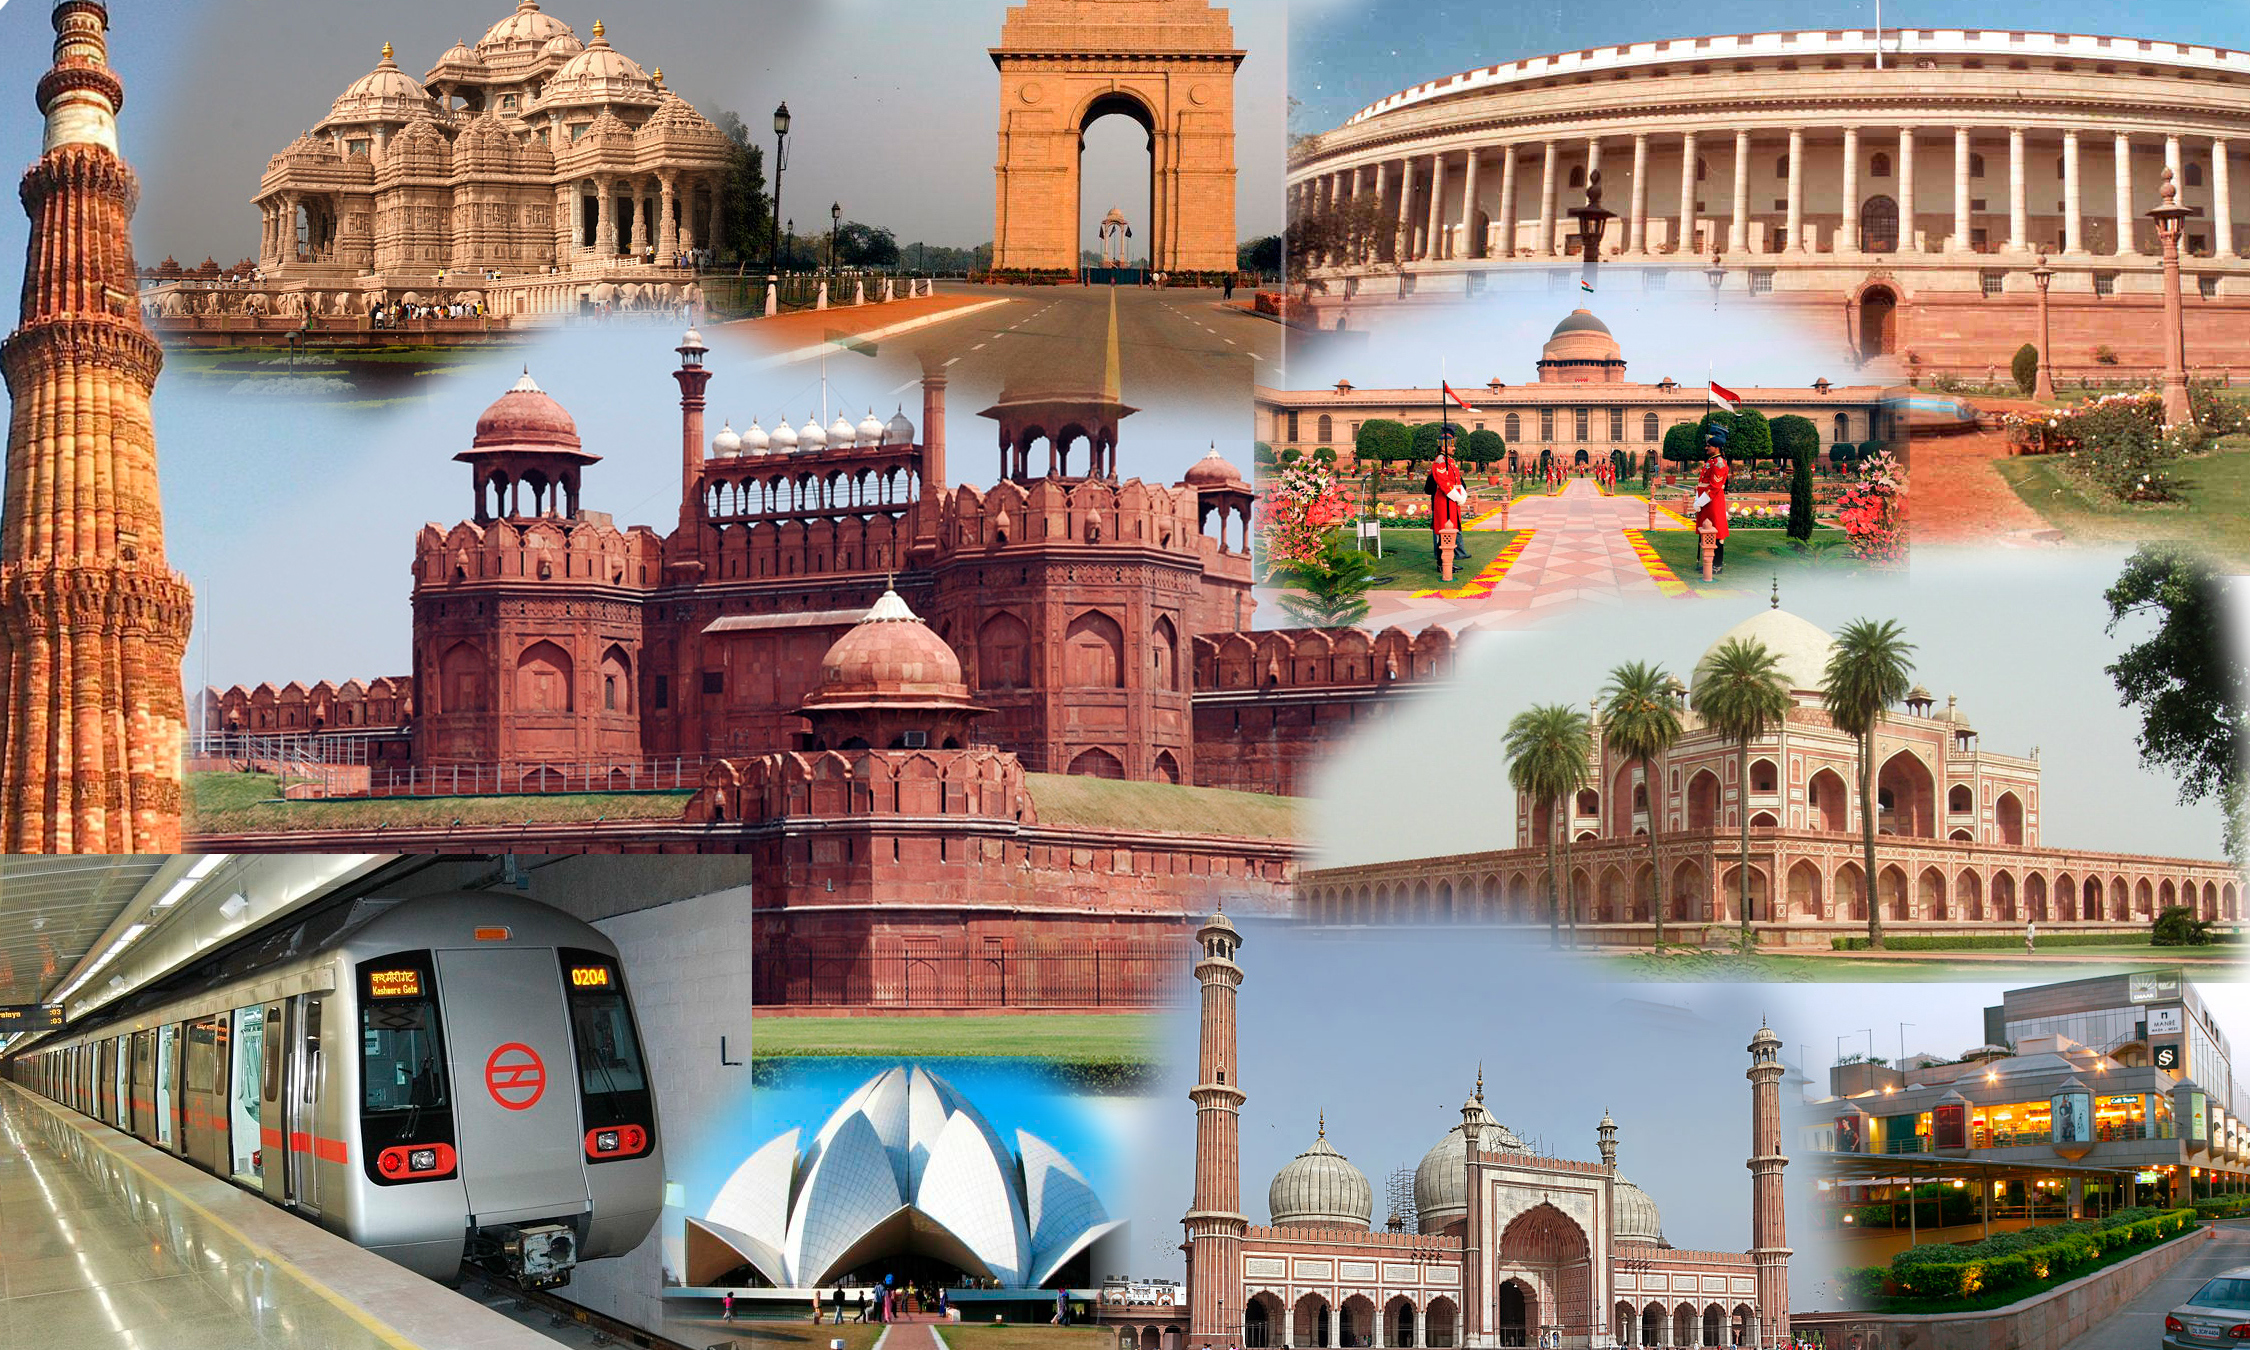 delhi city tour